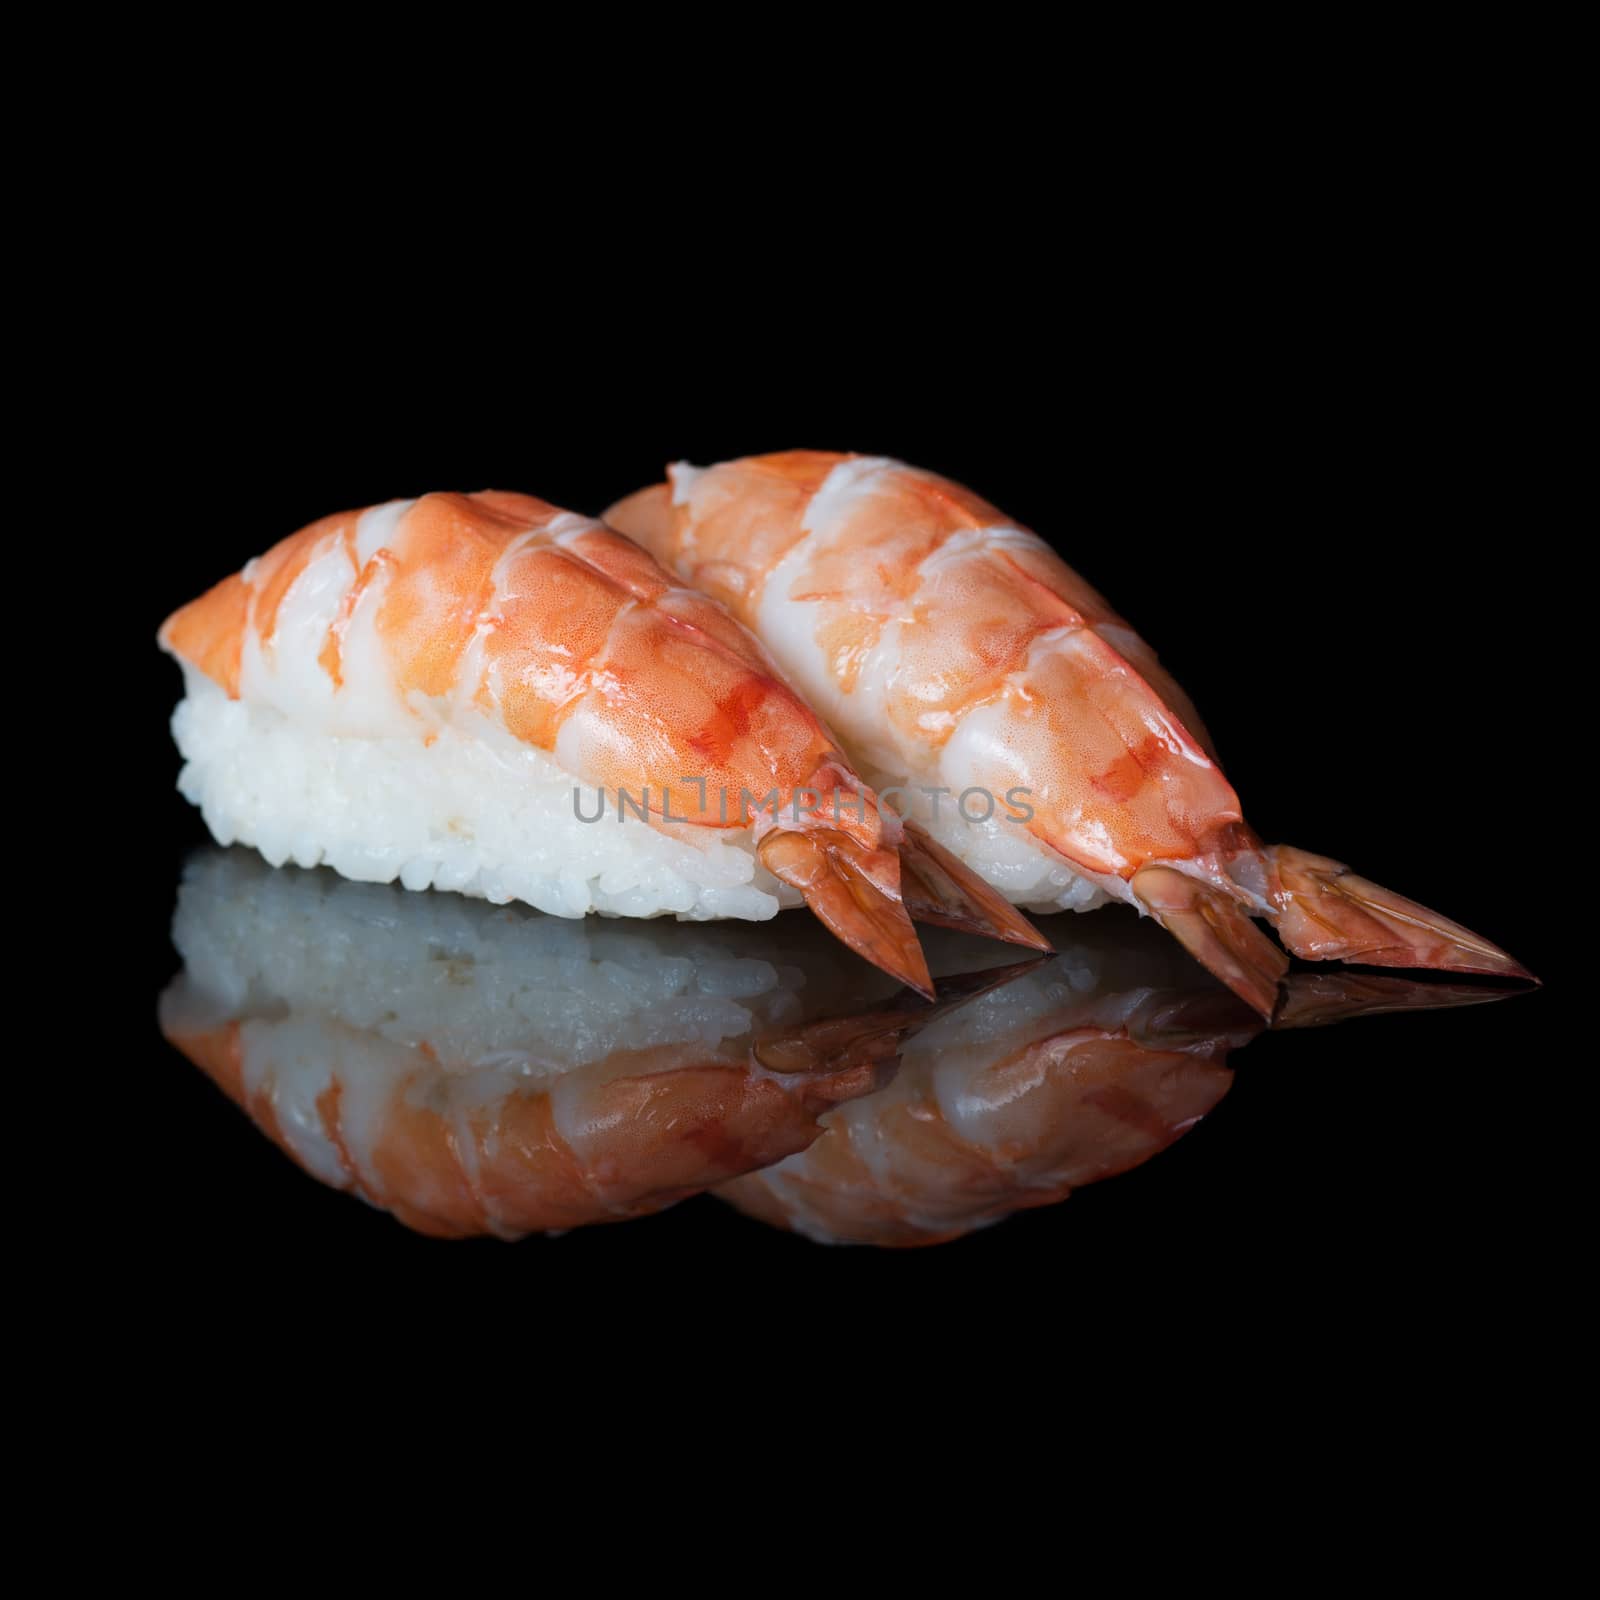 Shrimp sushi by kzen